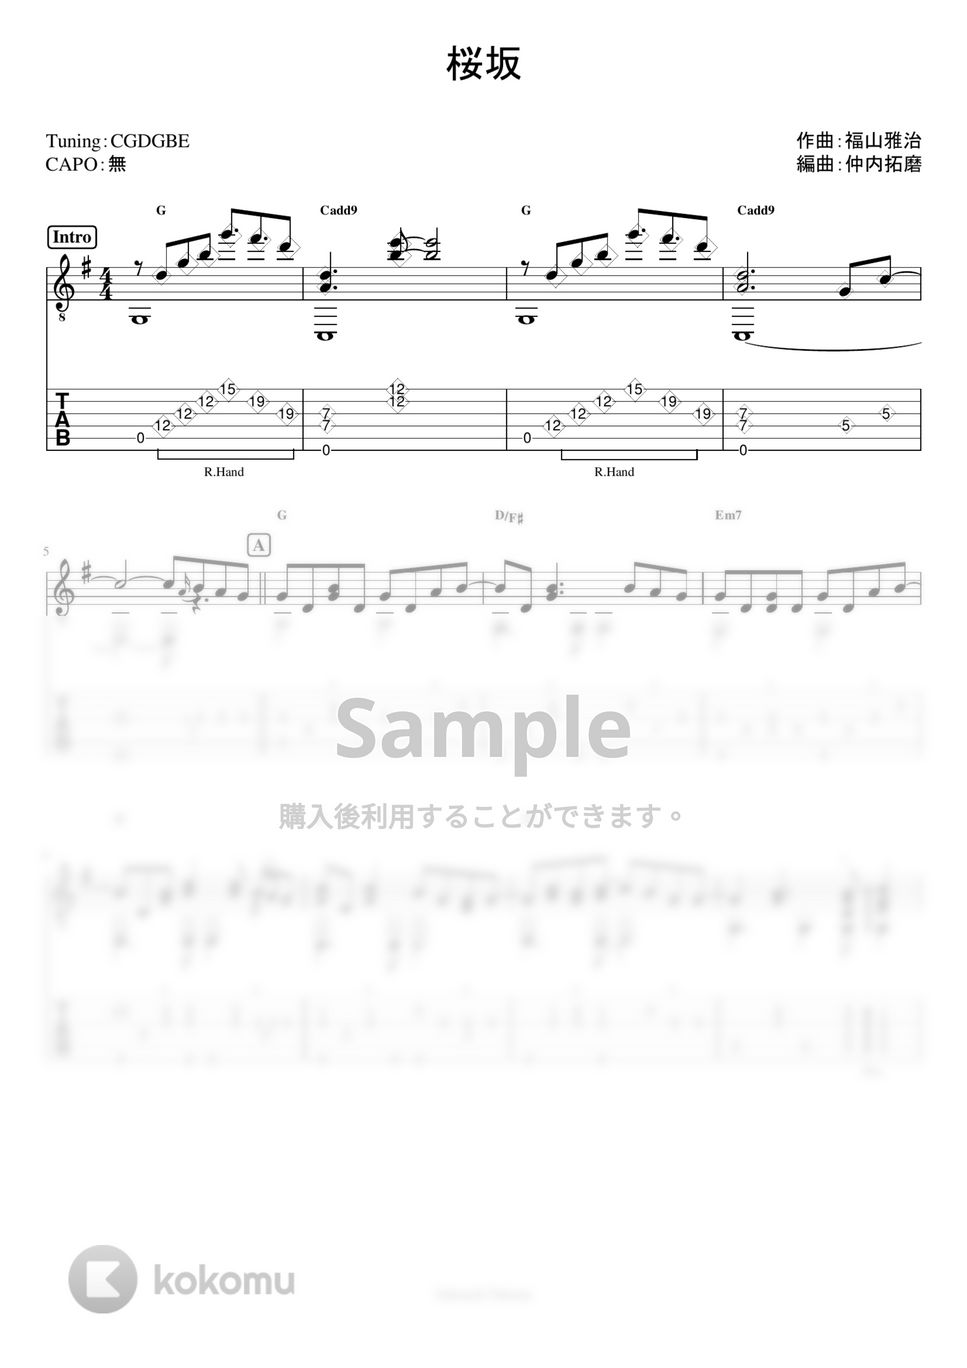 福山雅治 - 桜坂 (ソロギターTAB譜) by 仲内拓磨